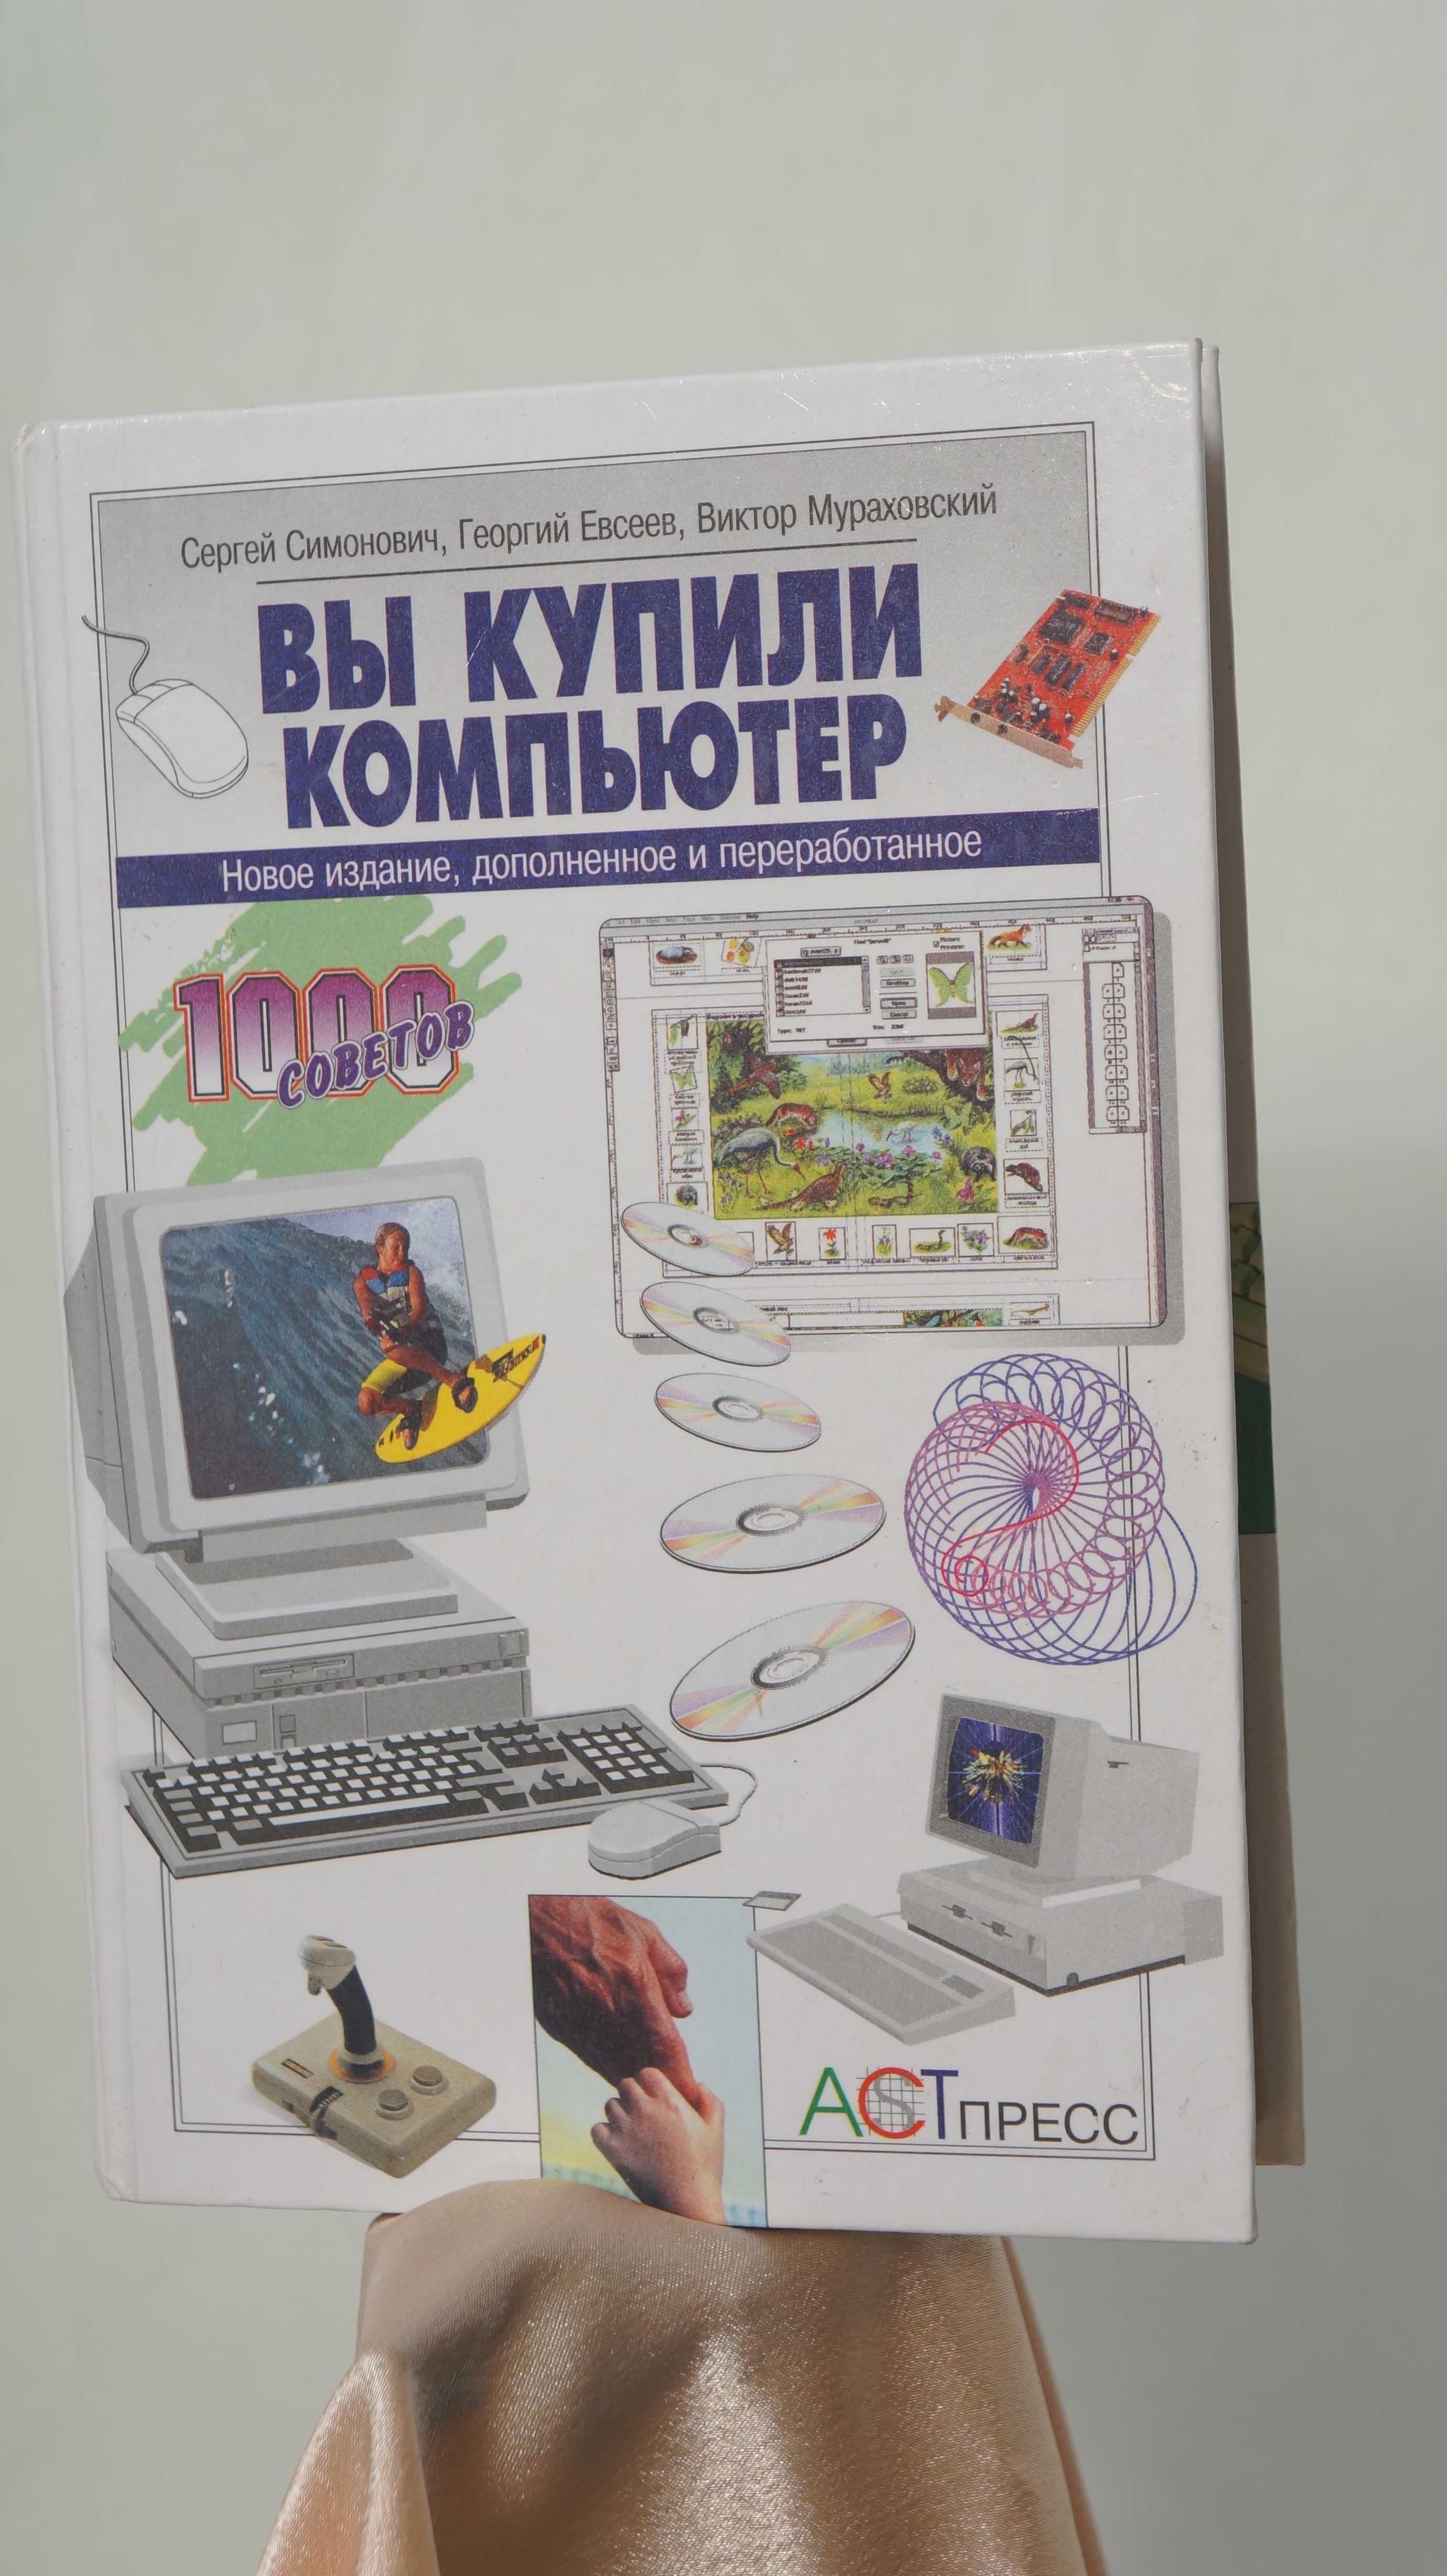 Книга "Вы купили компьютер" Сергей Семенович, Георгий Евсеев...